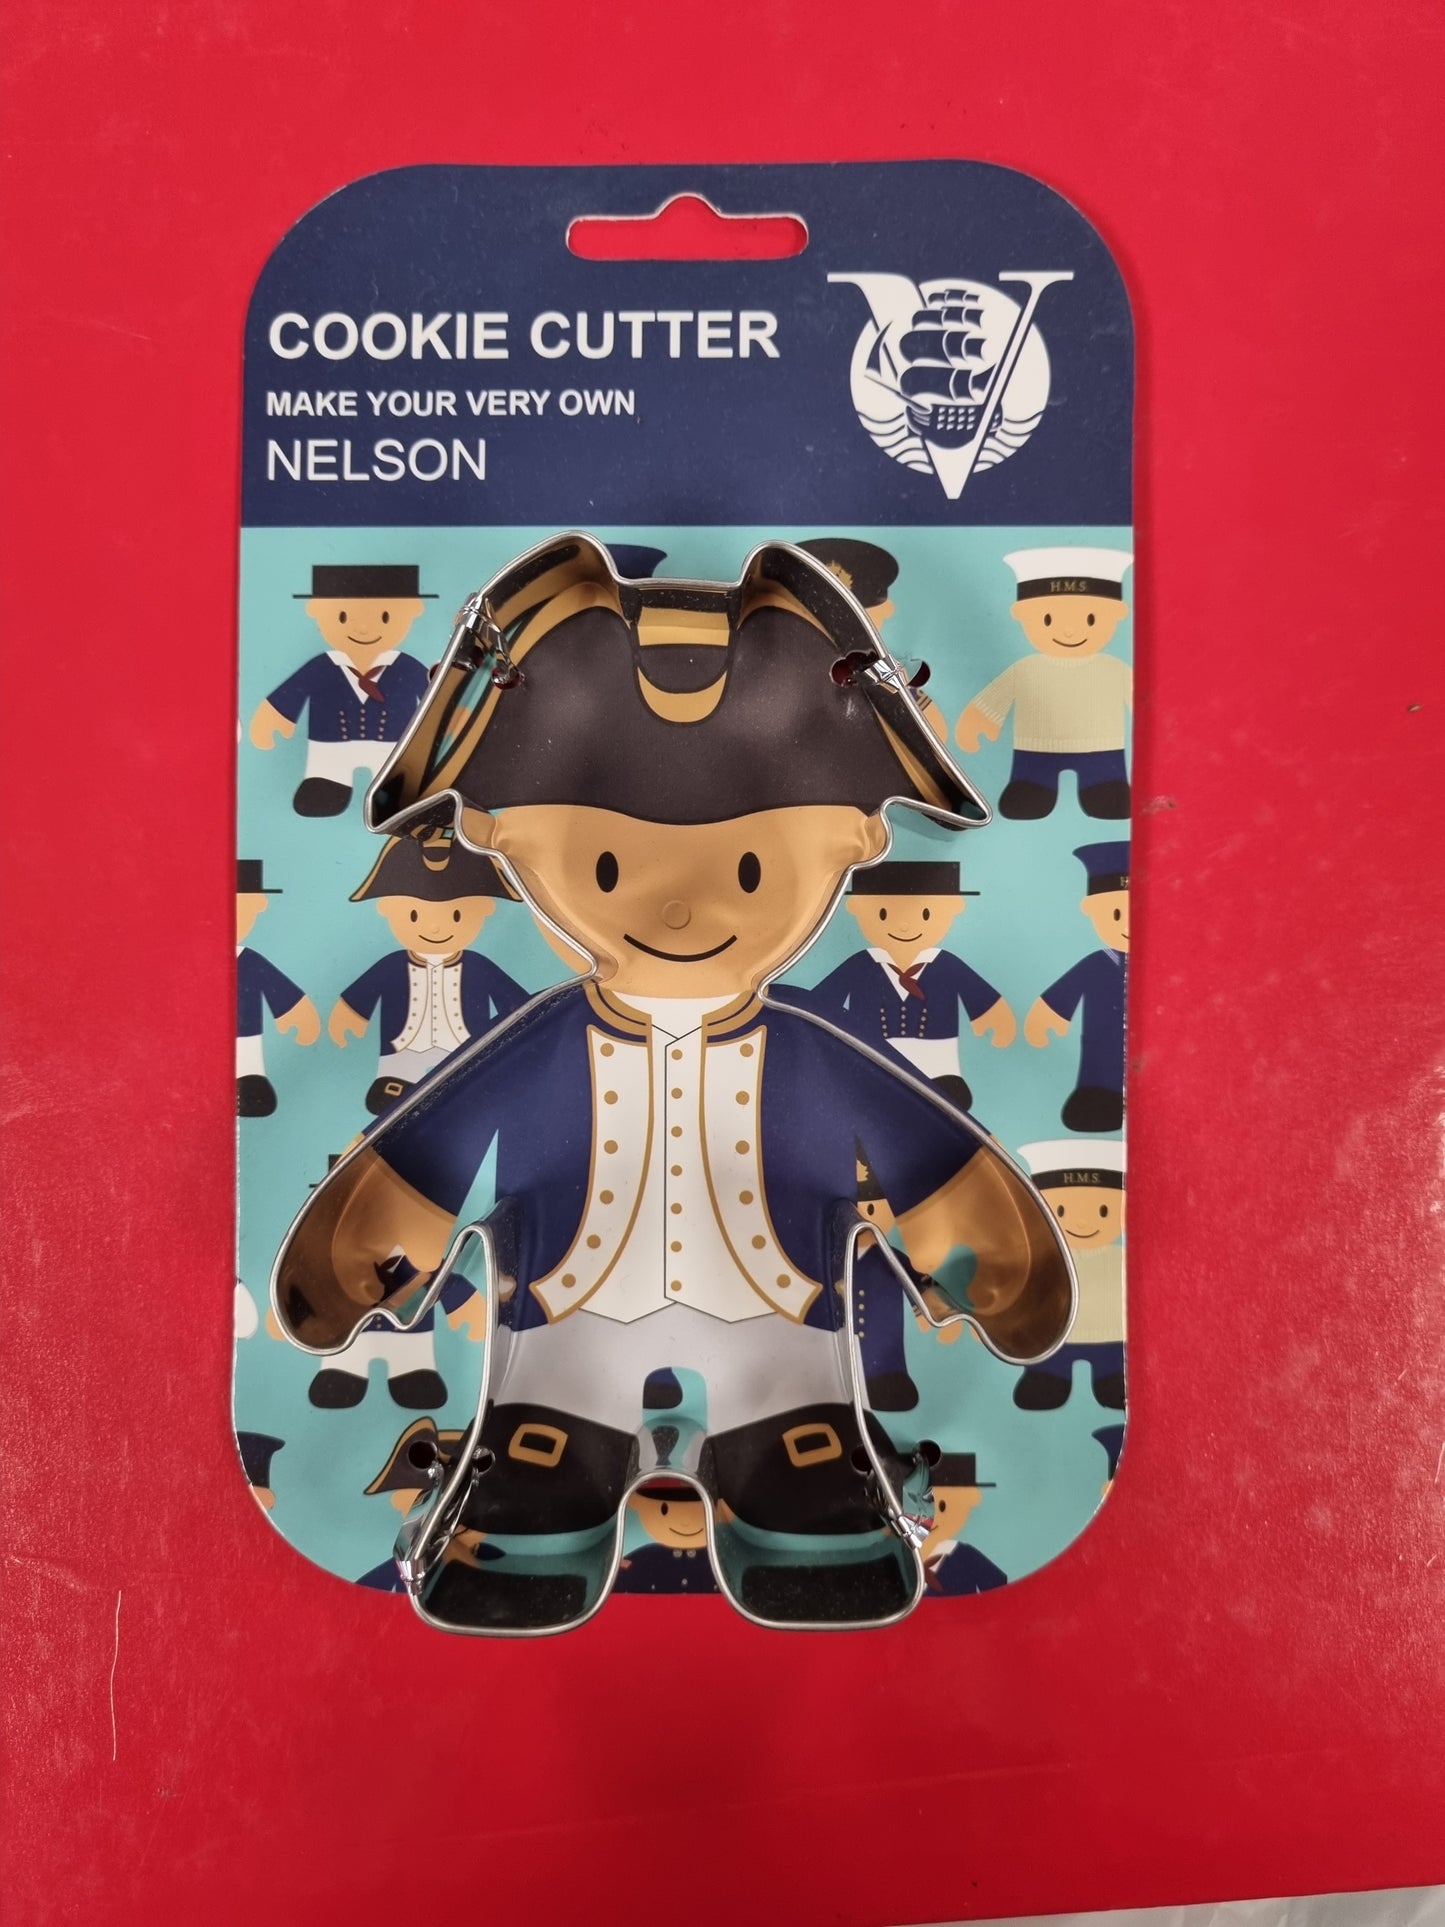 Cookie Cutter